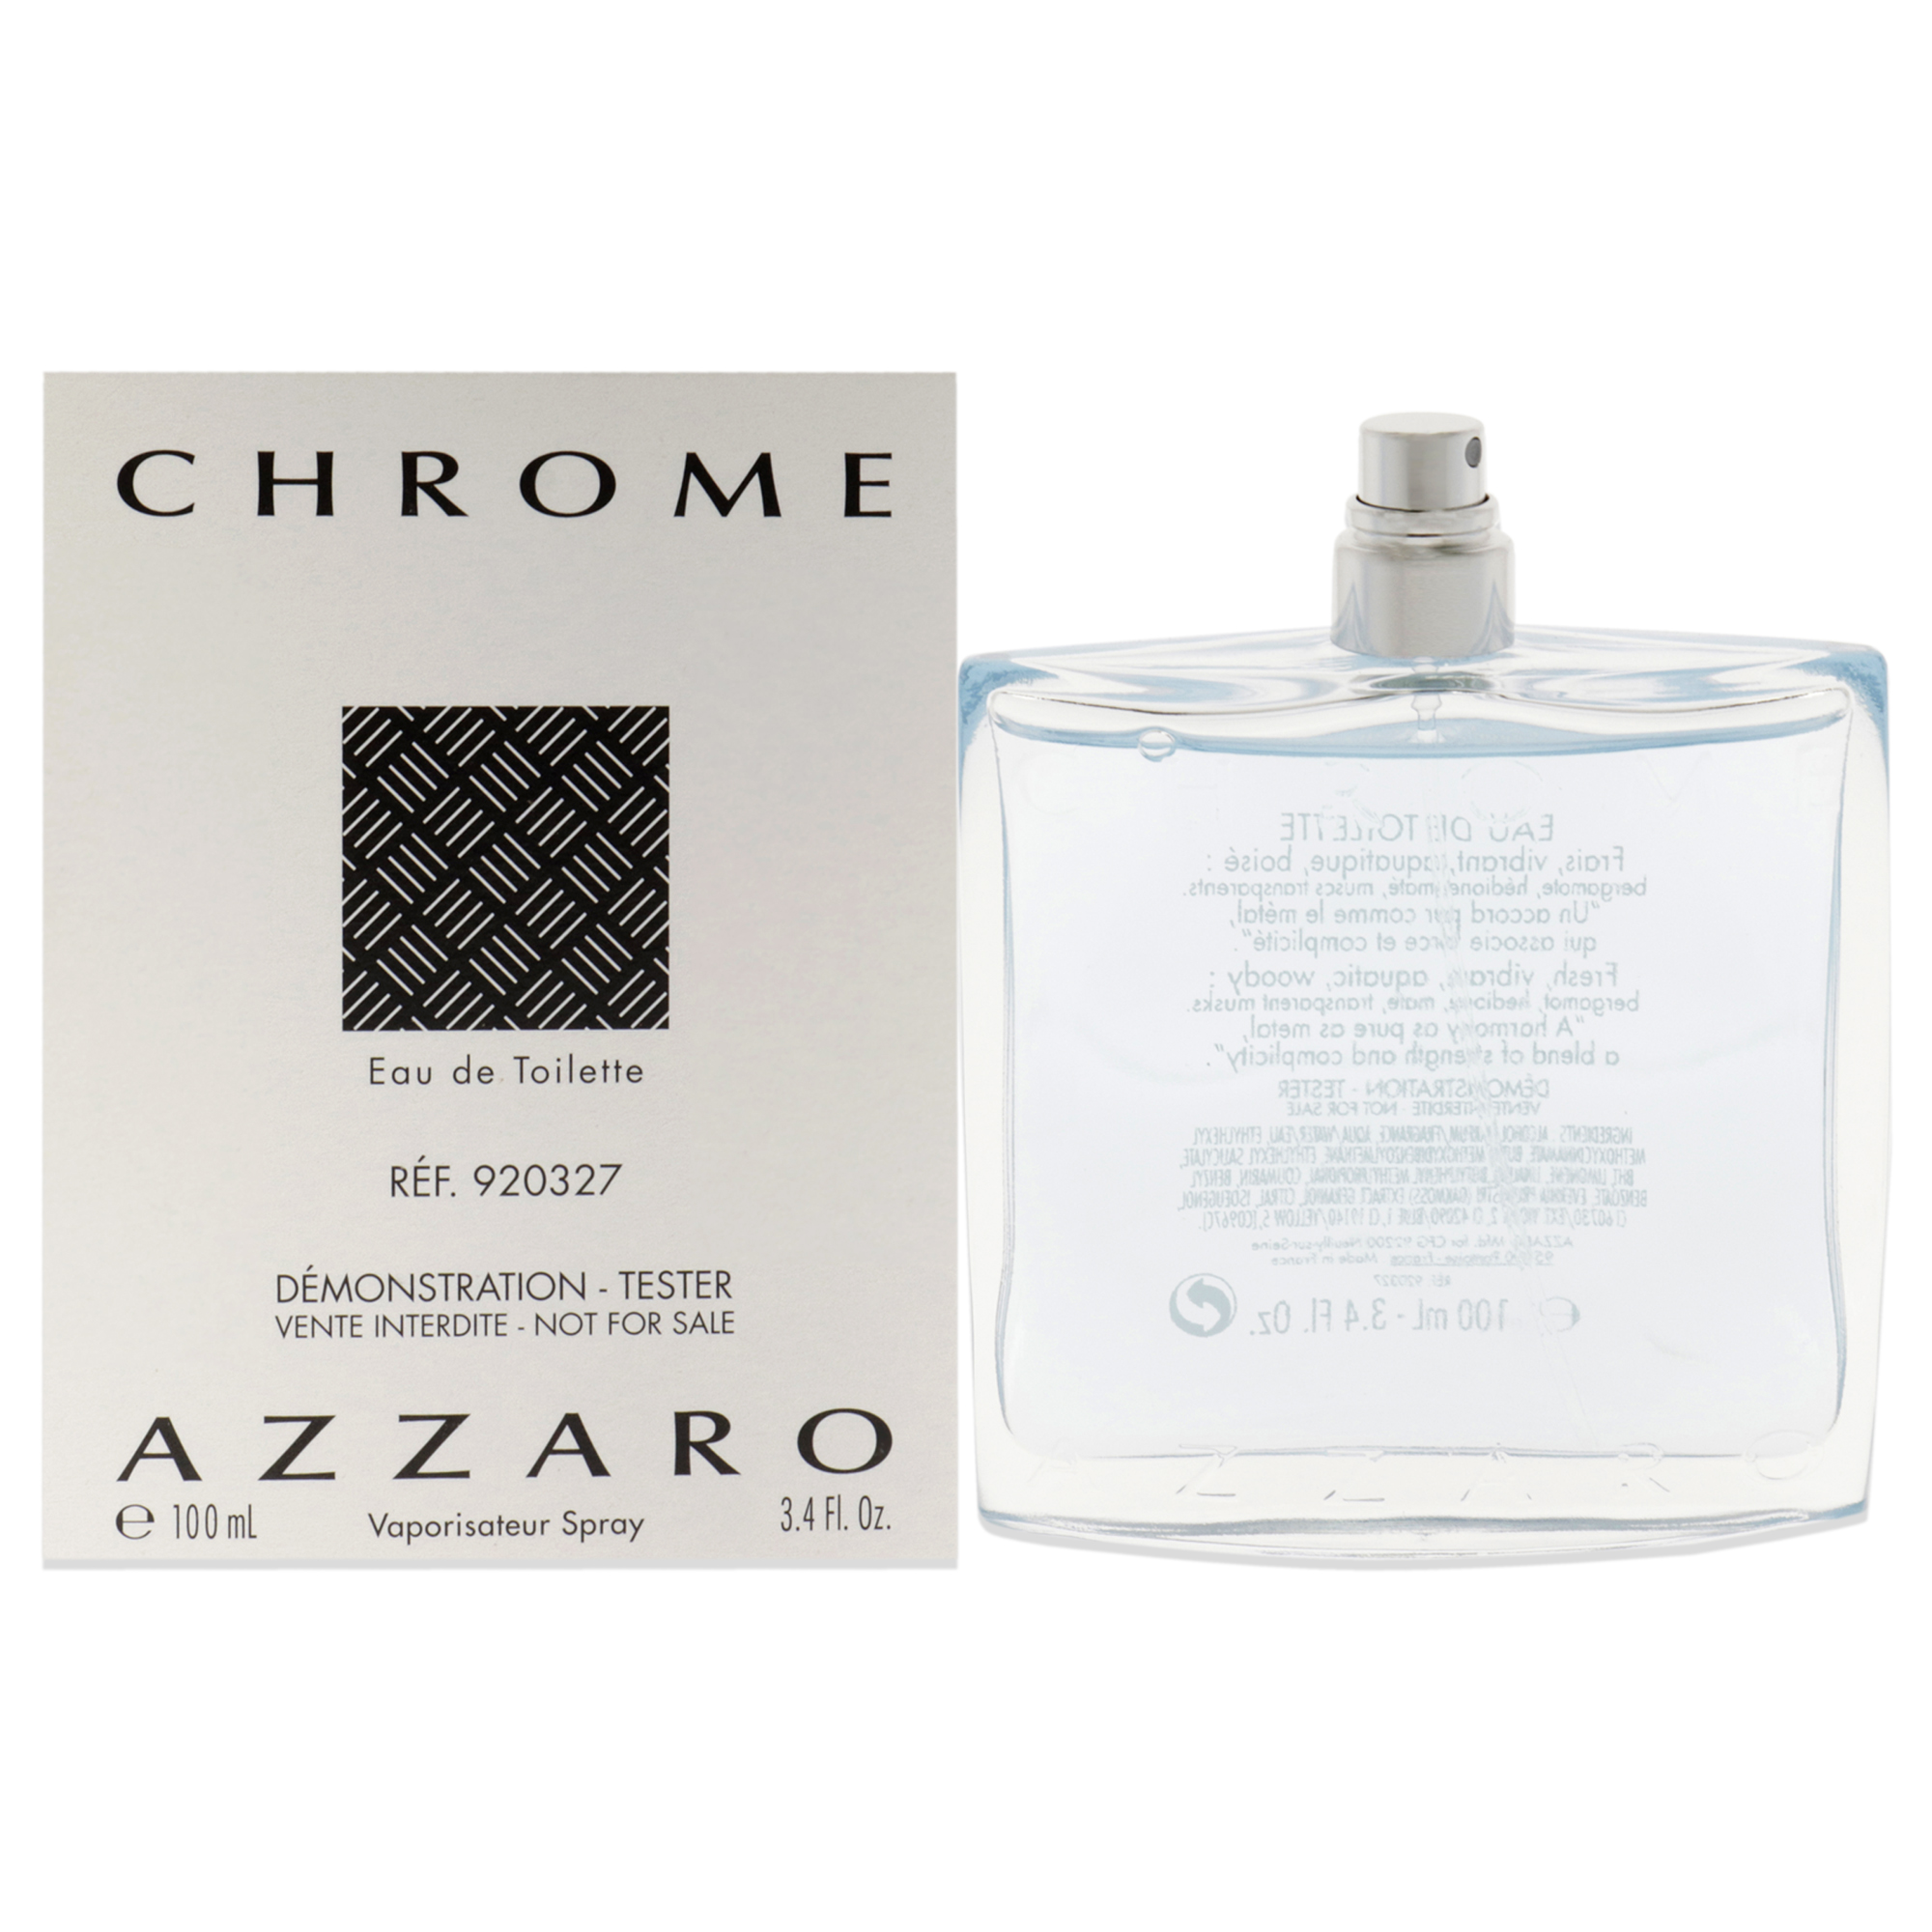 Azzaro Chrome by Loris Azzaro for Men - 3.4 oz EDT Spray (Tester)